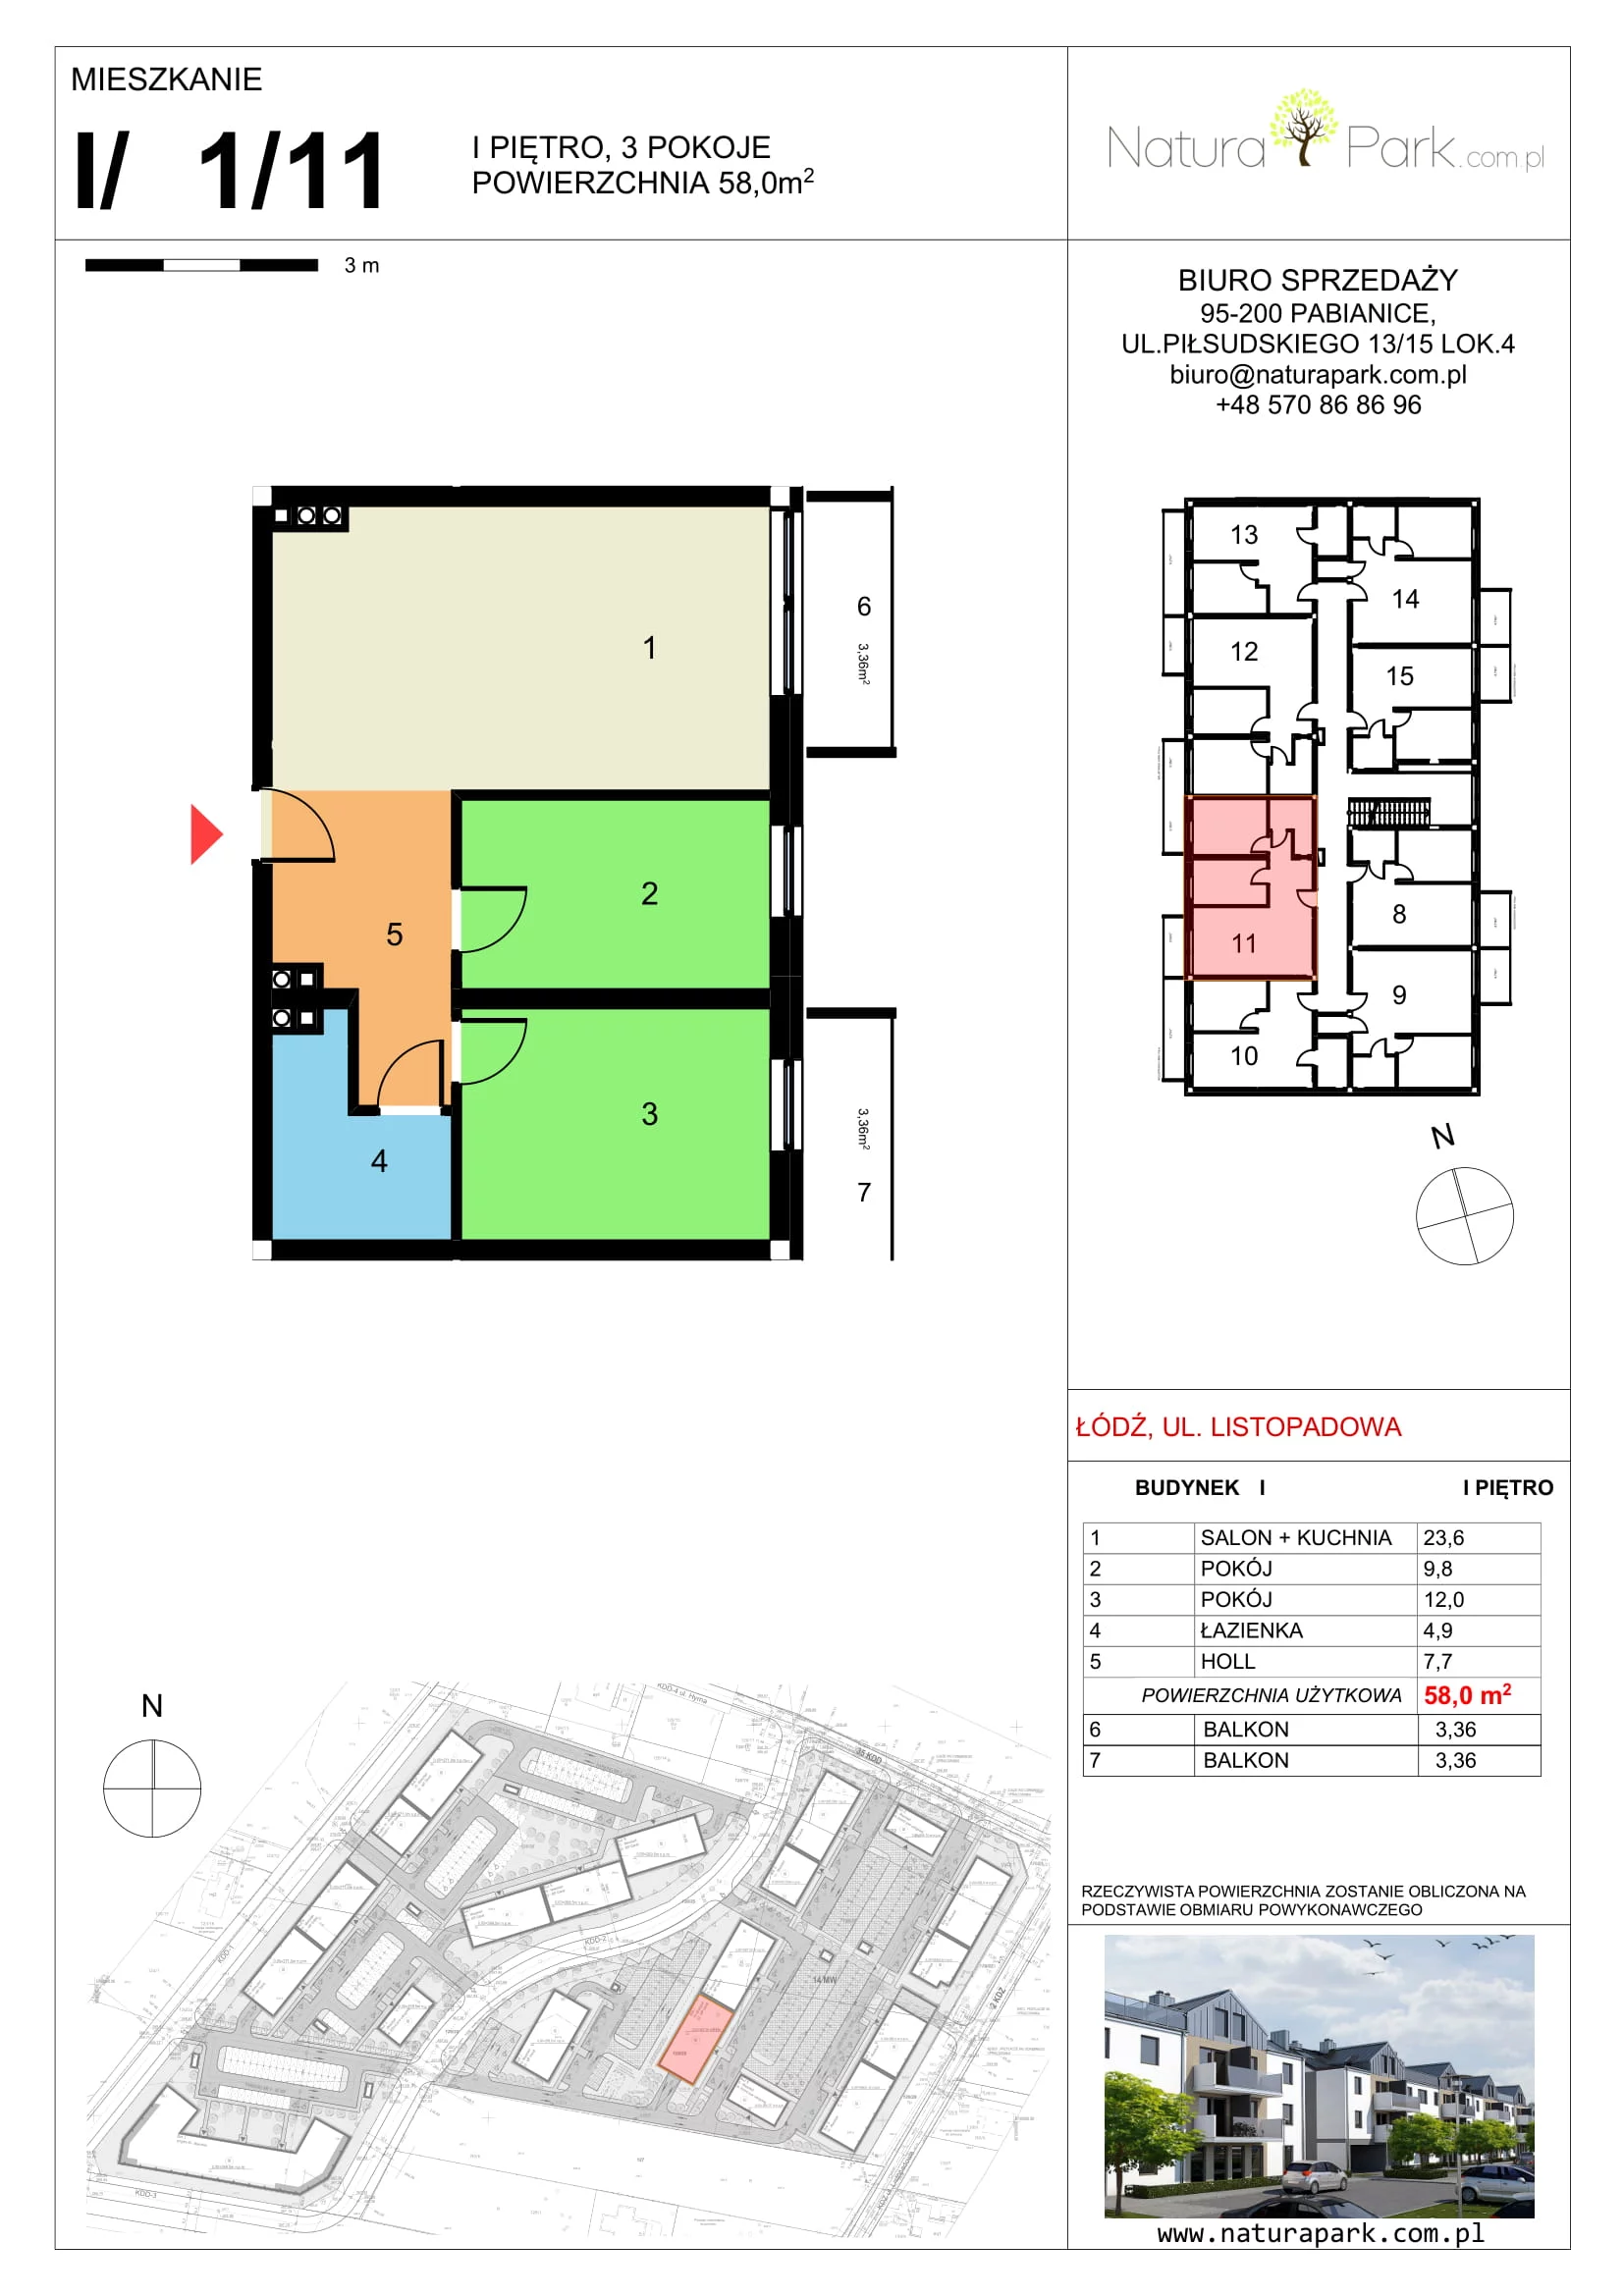 Mieszkanie 56,84 m², piętro 1, oferta nr I/1/11, Natura Park, Łódź, Widzew, Dolina Łódki, ul. Listopadowa